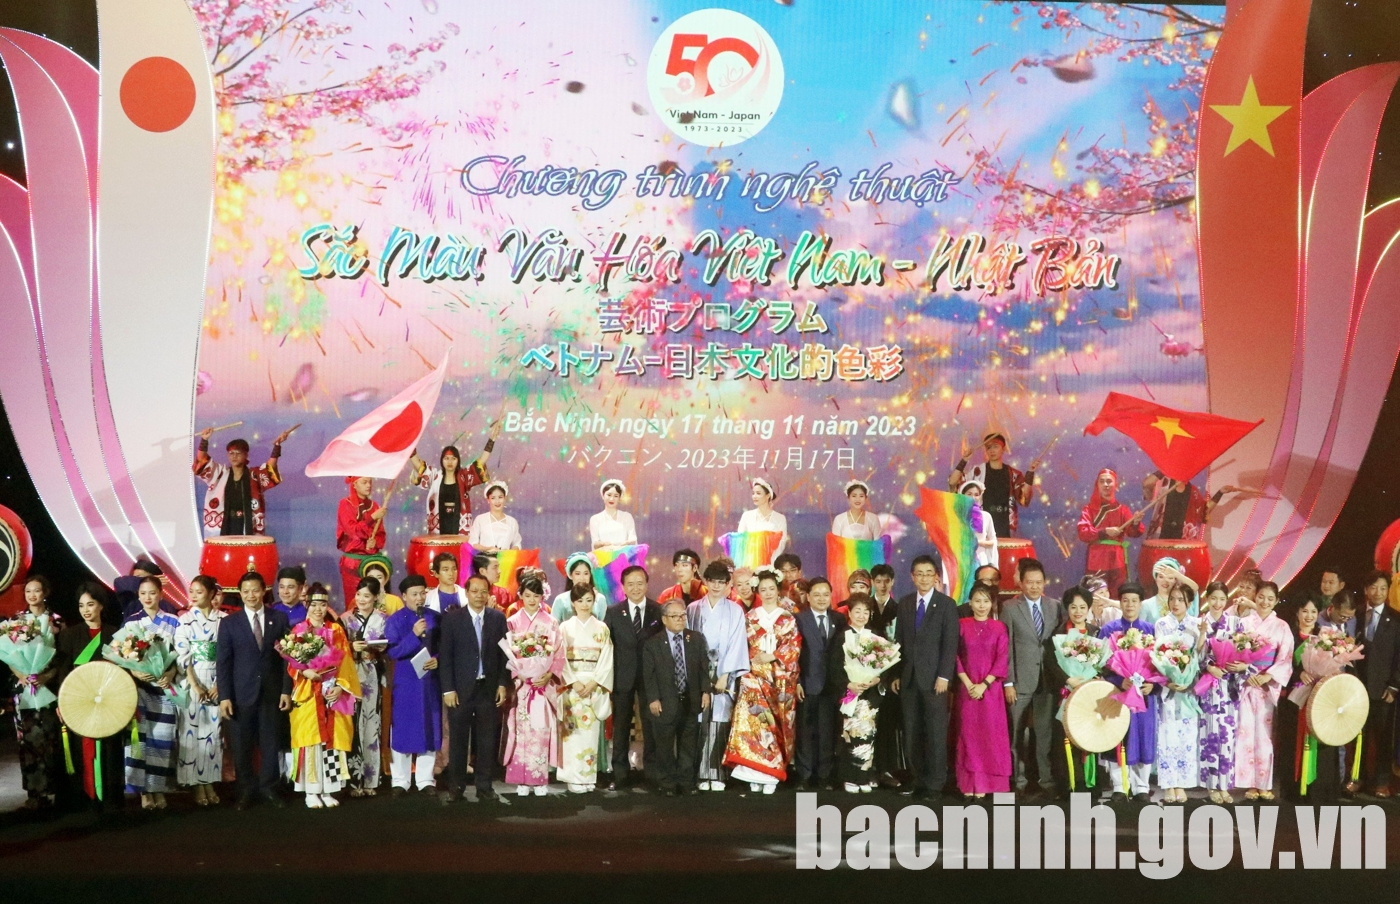 Bắc Ninh tổ chức Chương trình Sắc màu văn hóa Việt Nam - Nhật Bản